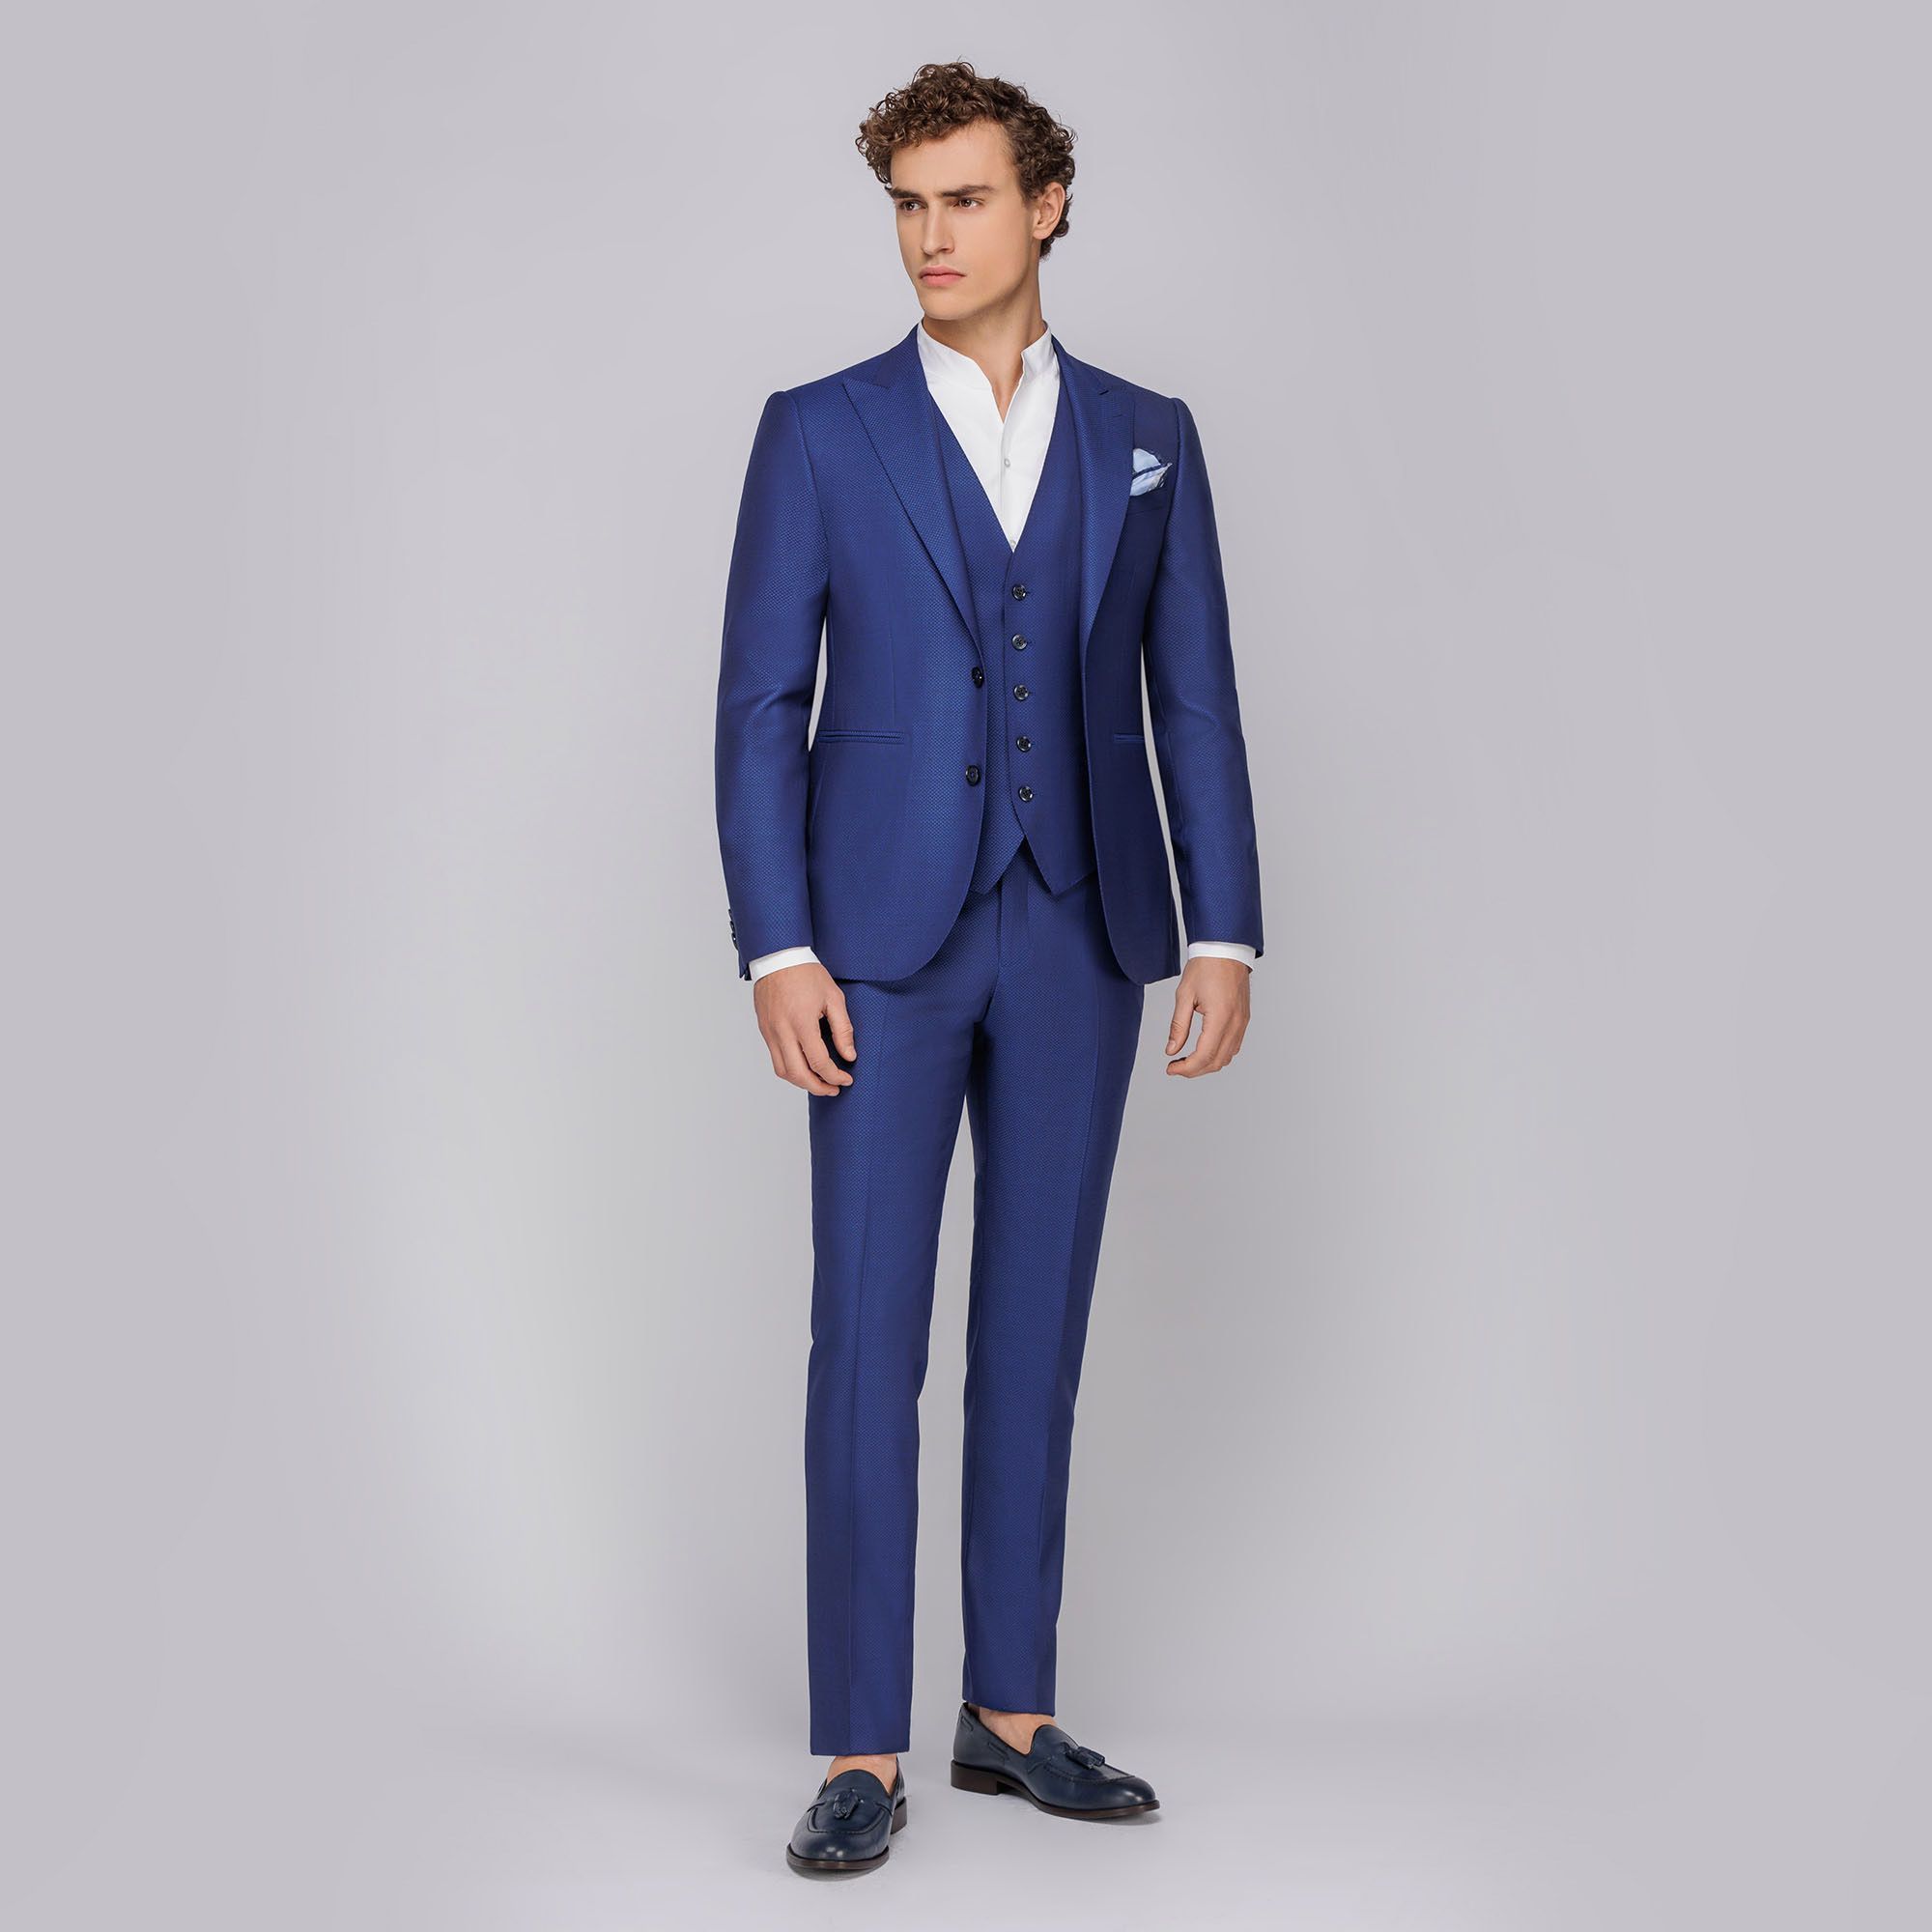 Men's 3-piece royal blue suit